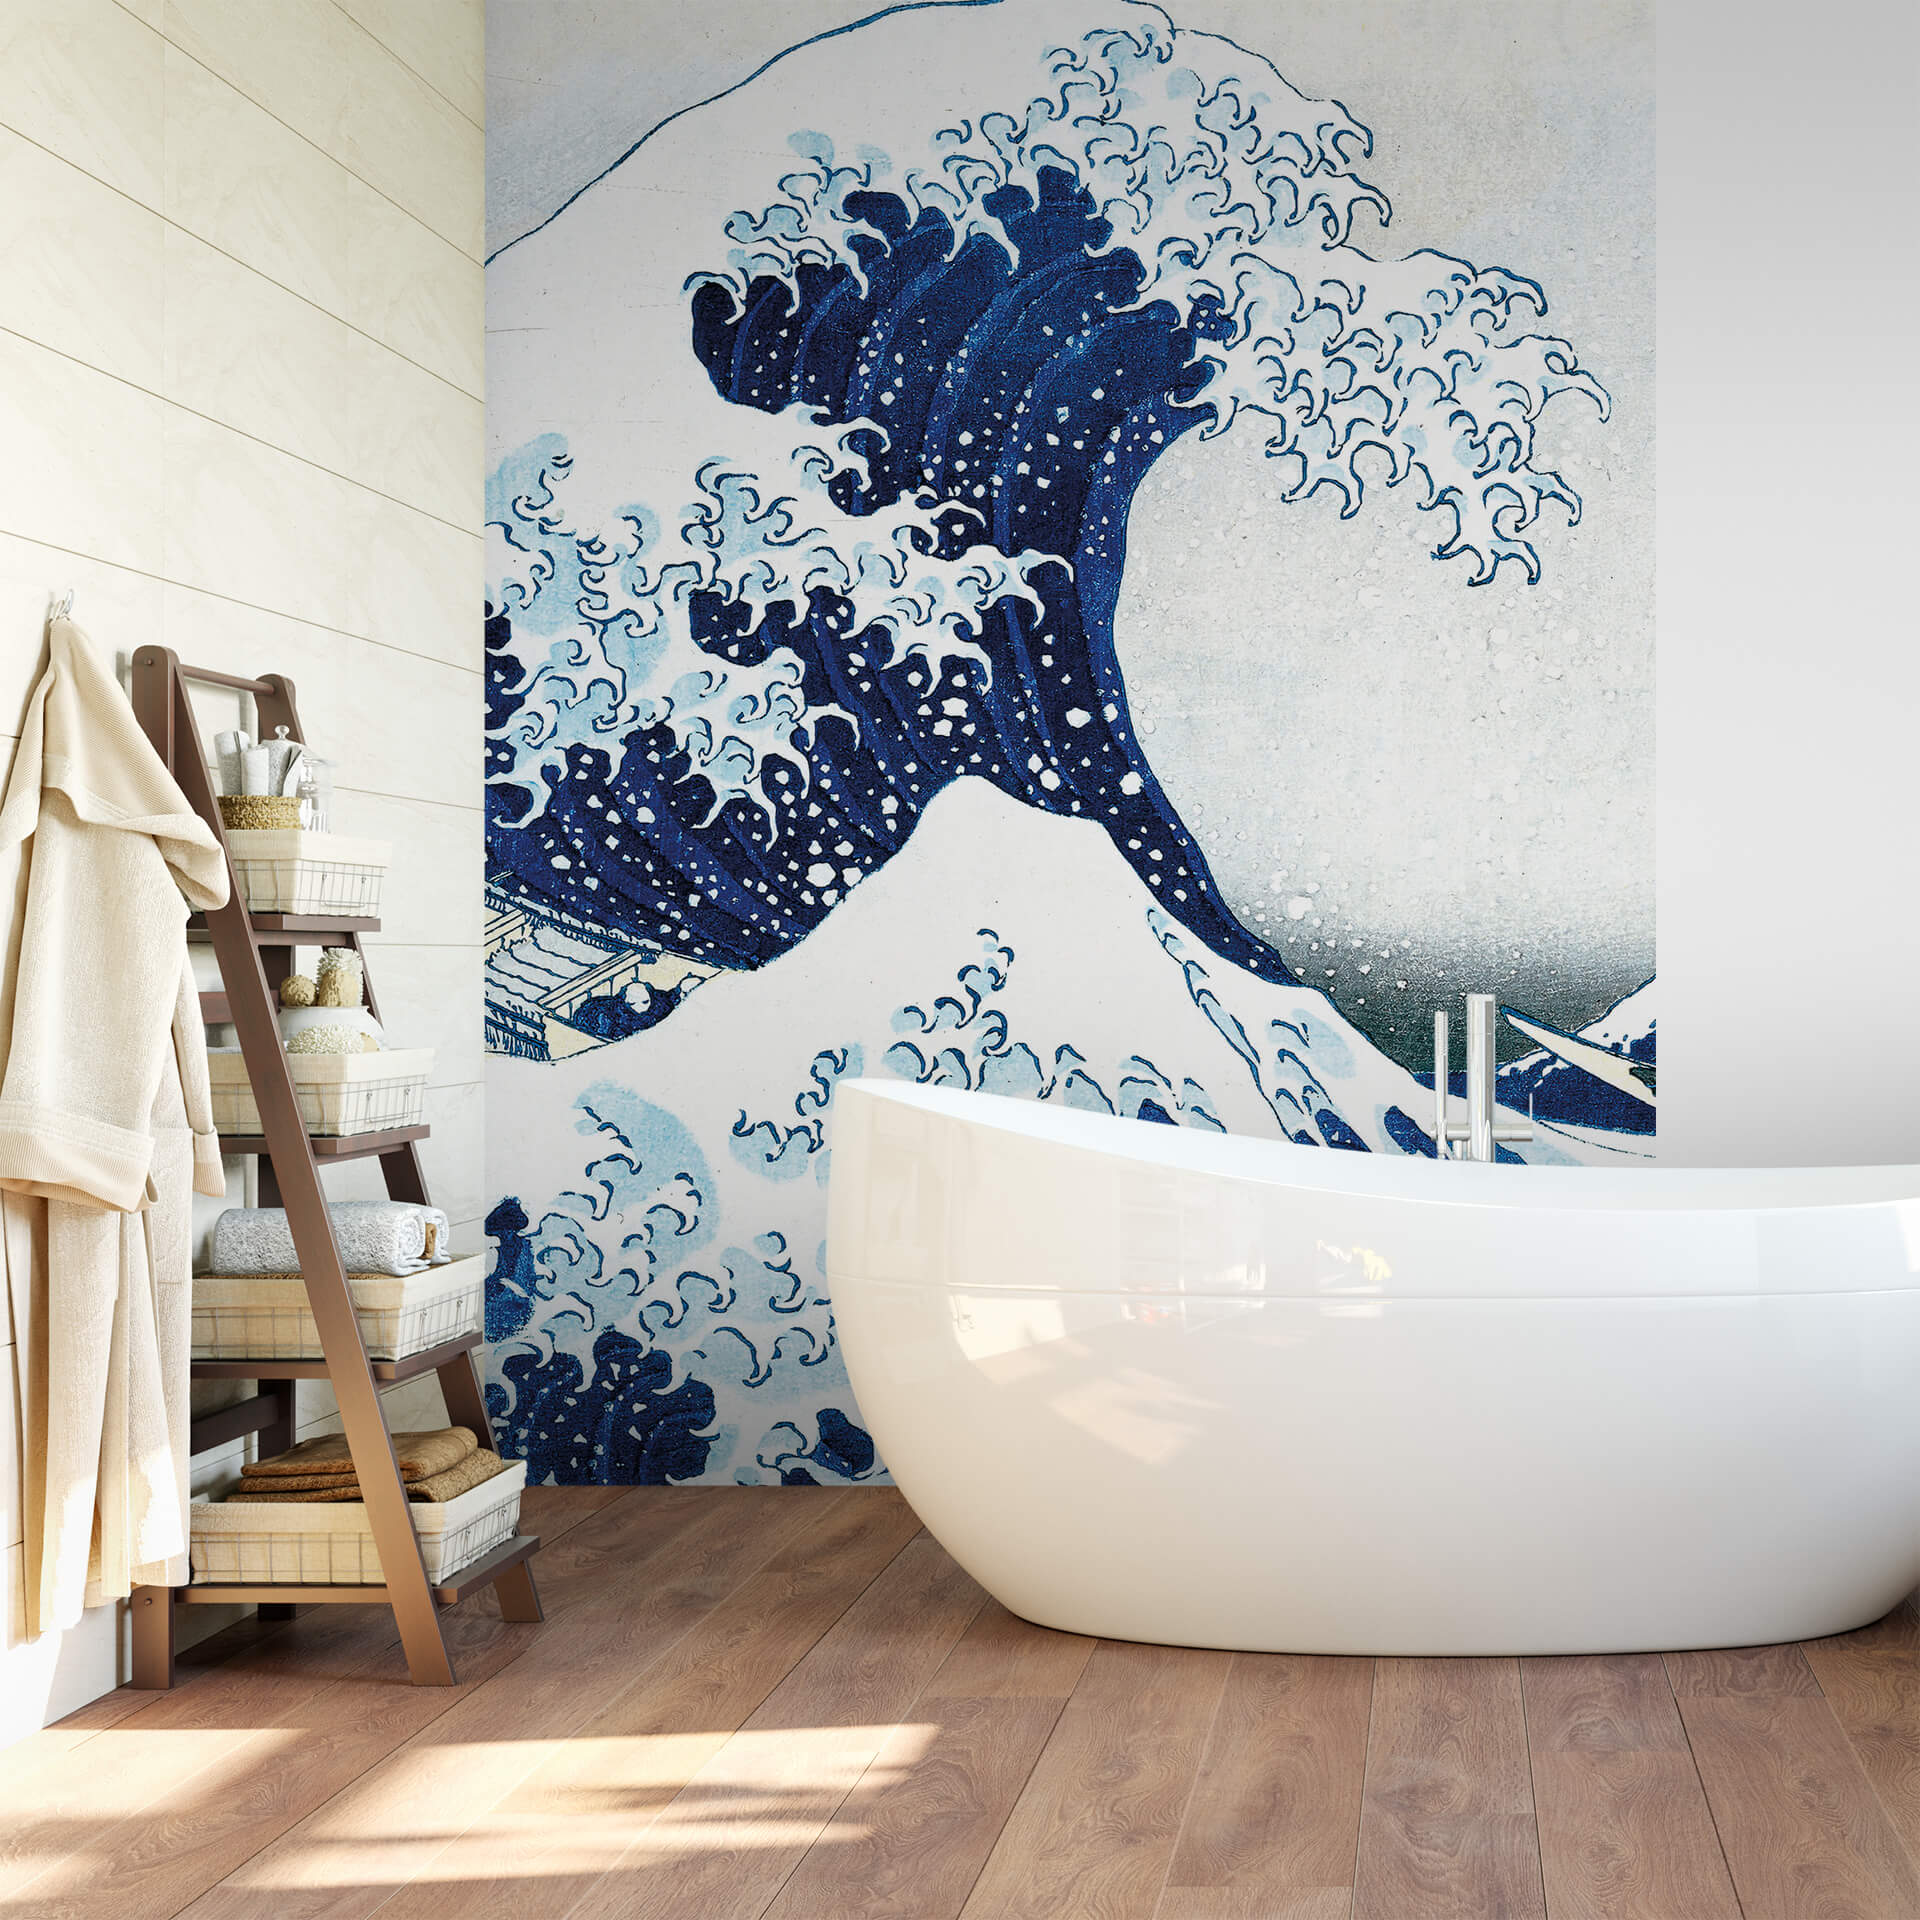 神奈川沖浪裏 or The Great Wave off Kanagawa Wallpaper 2  Hokusai  Flickr